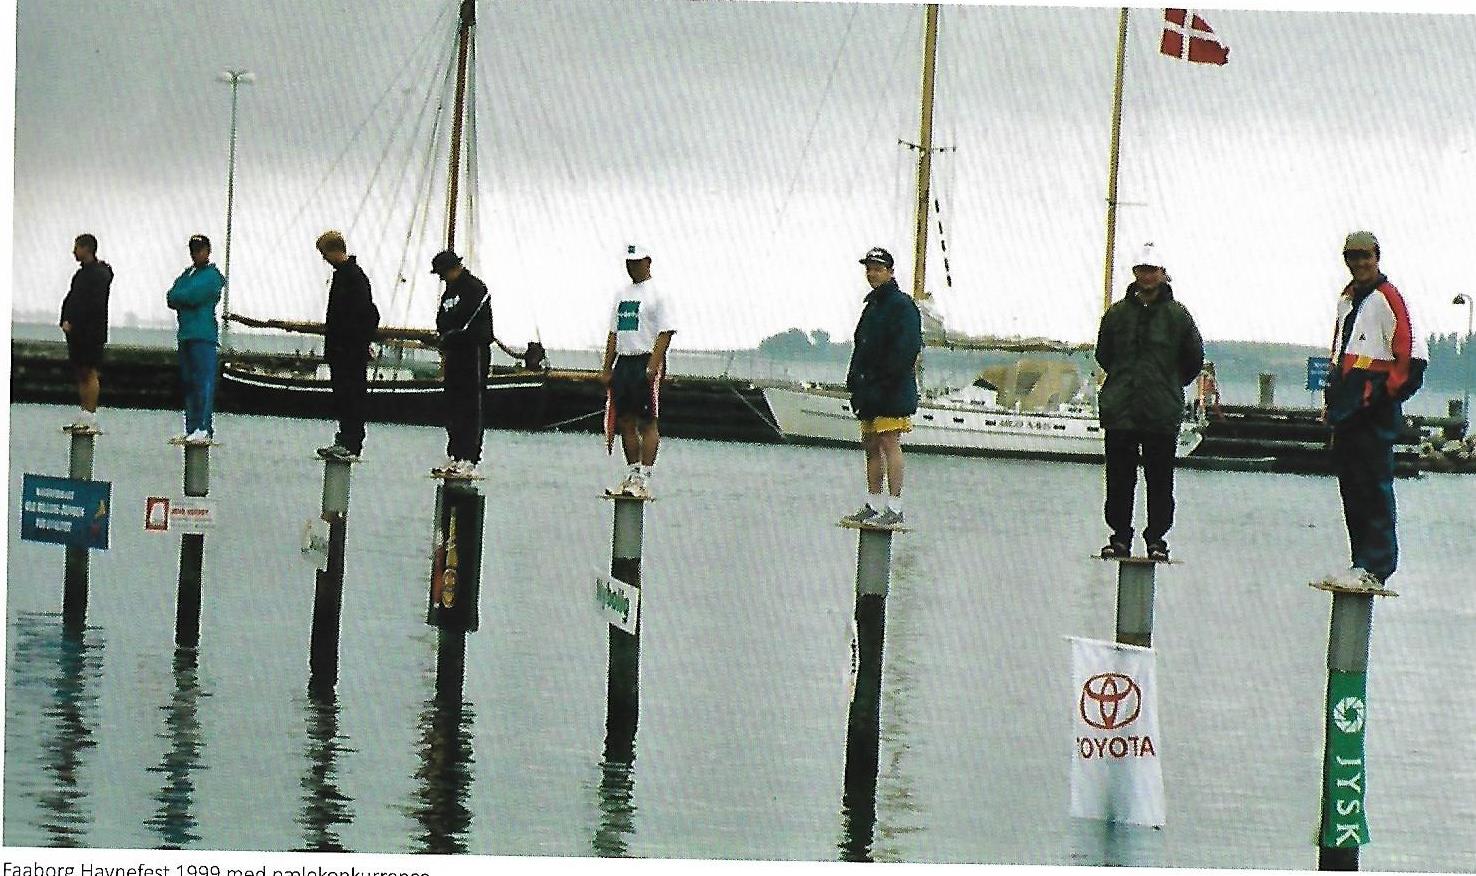 Faaborg Havnefest 1999 pælekonkurrence